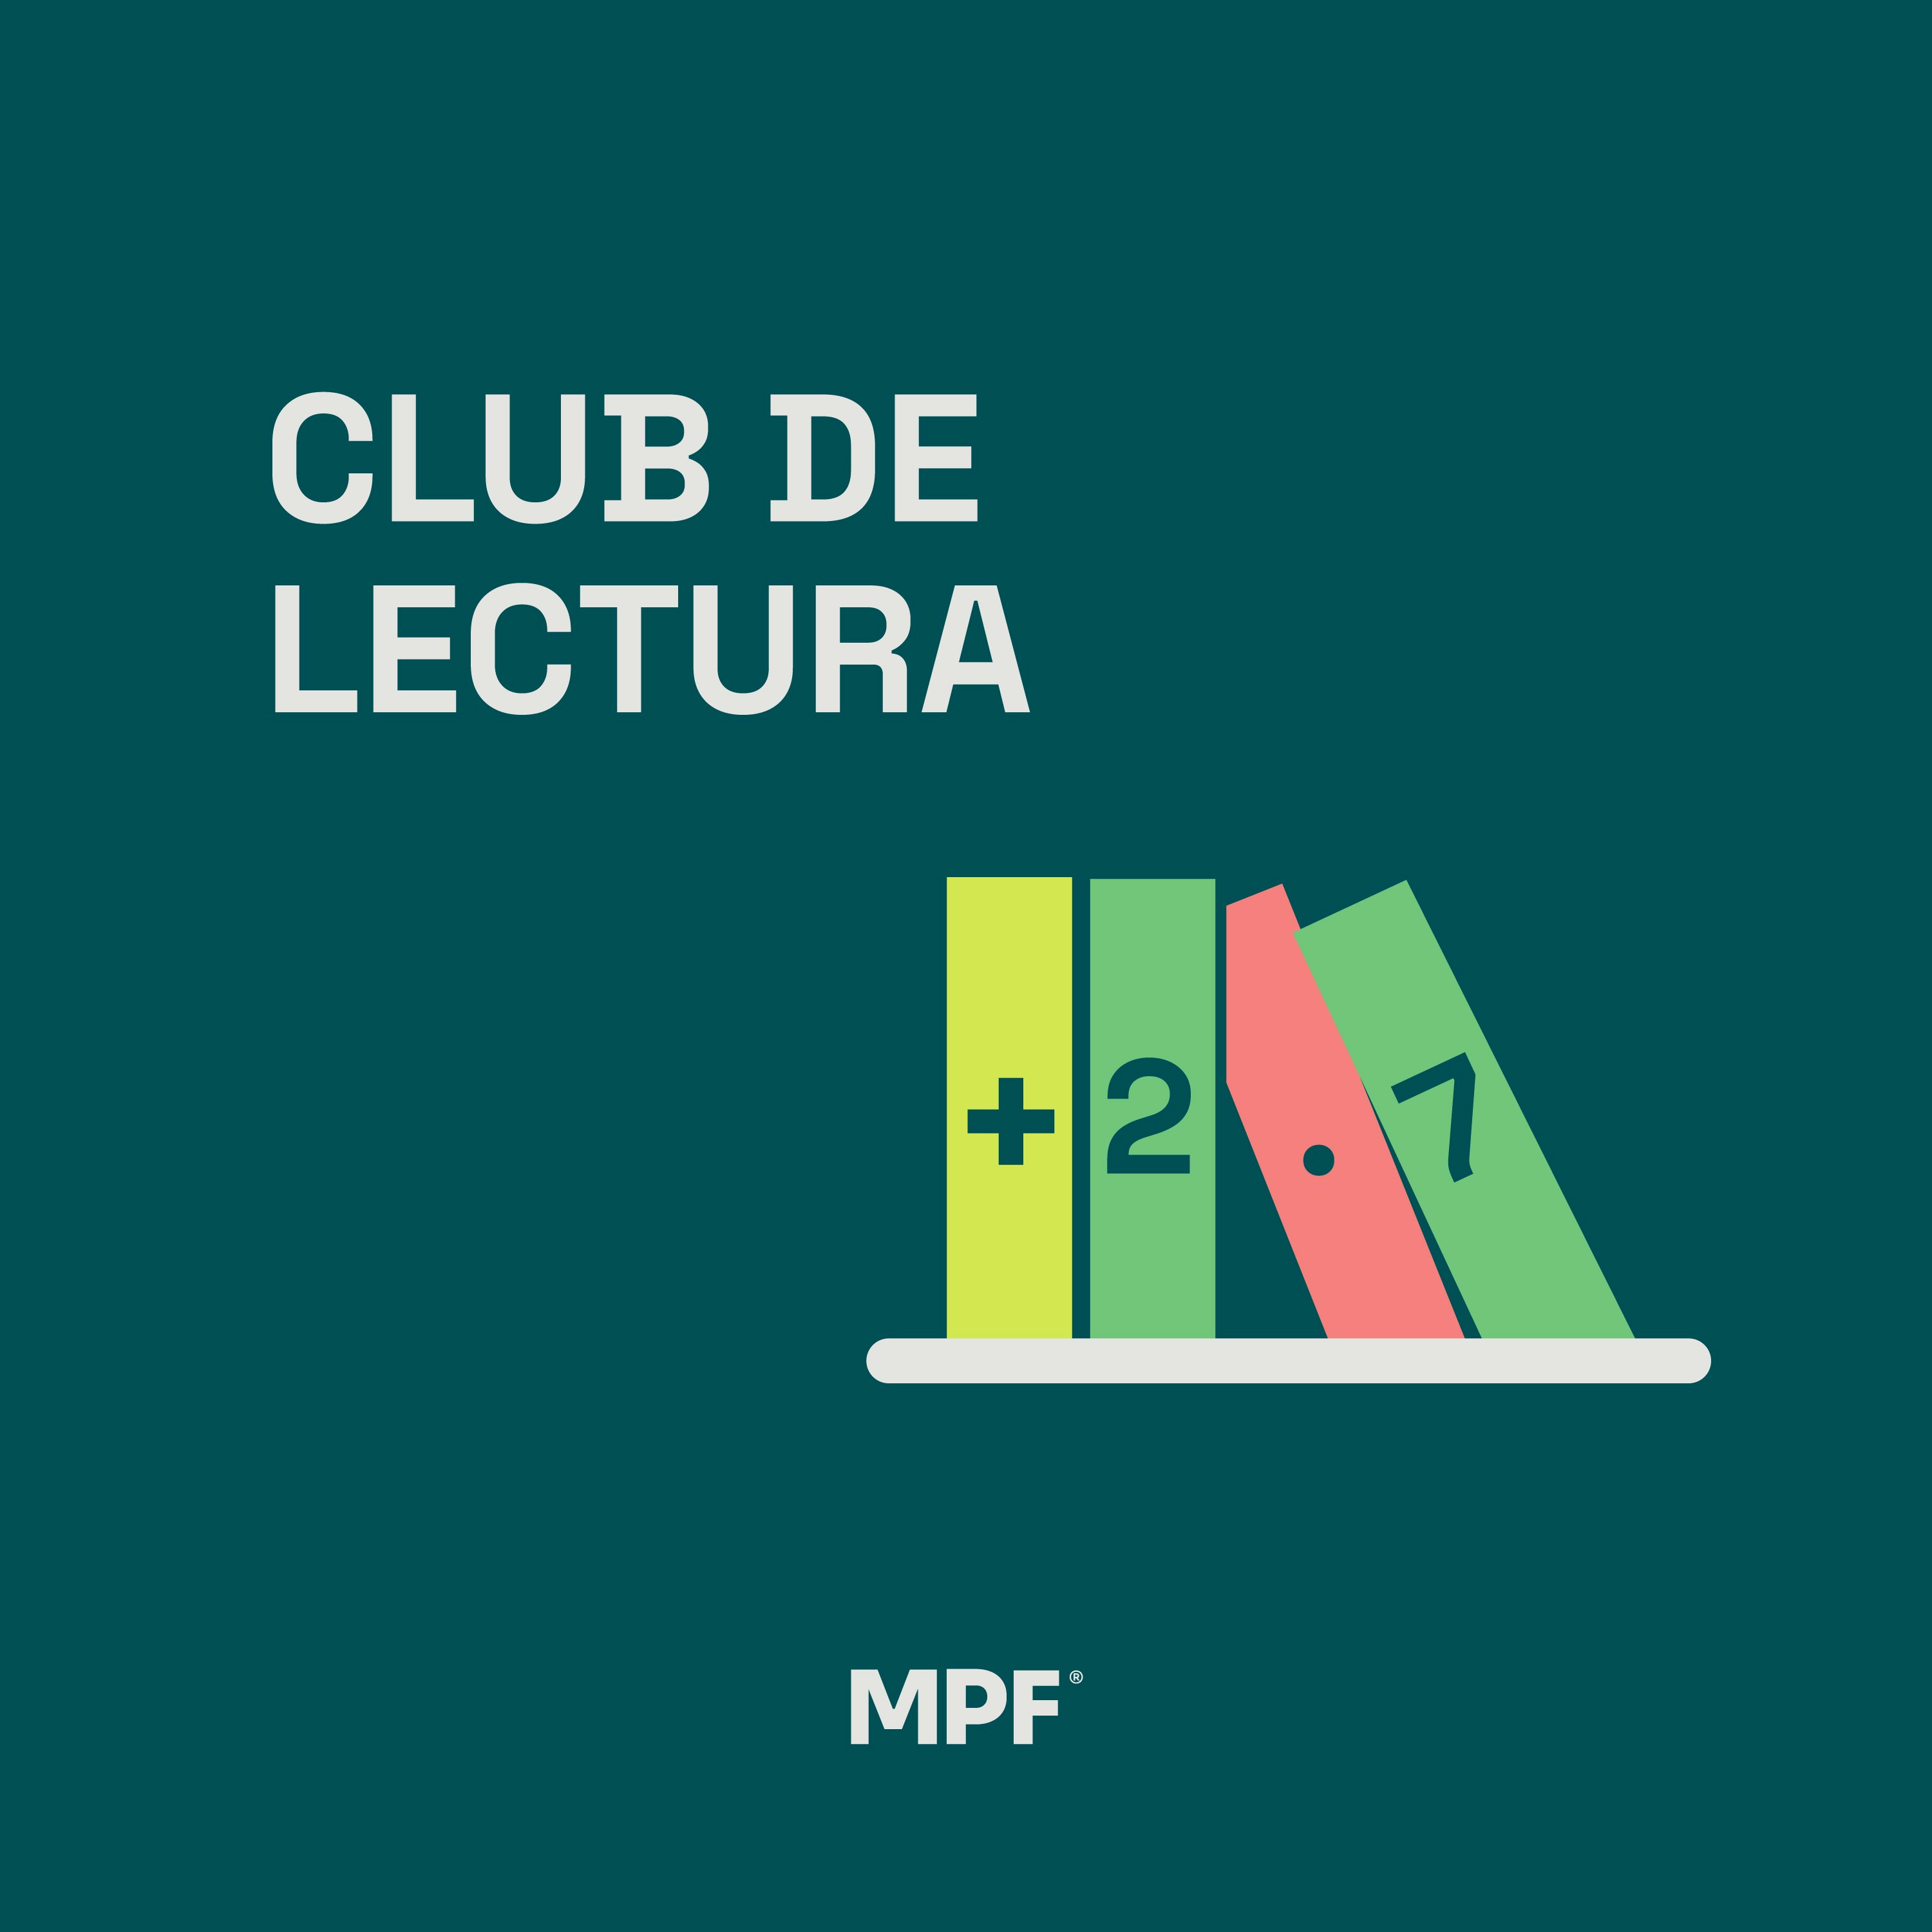 Club de lectura de MPF